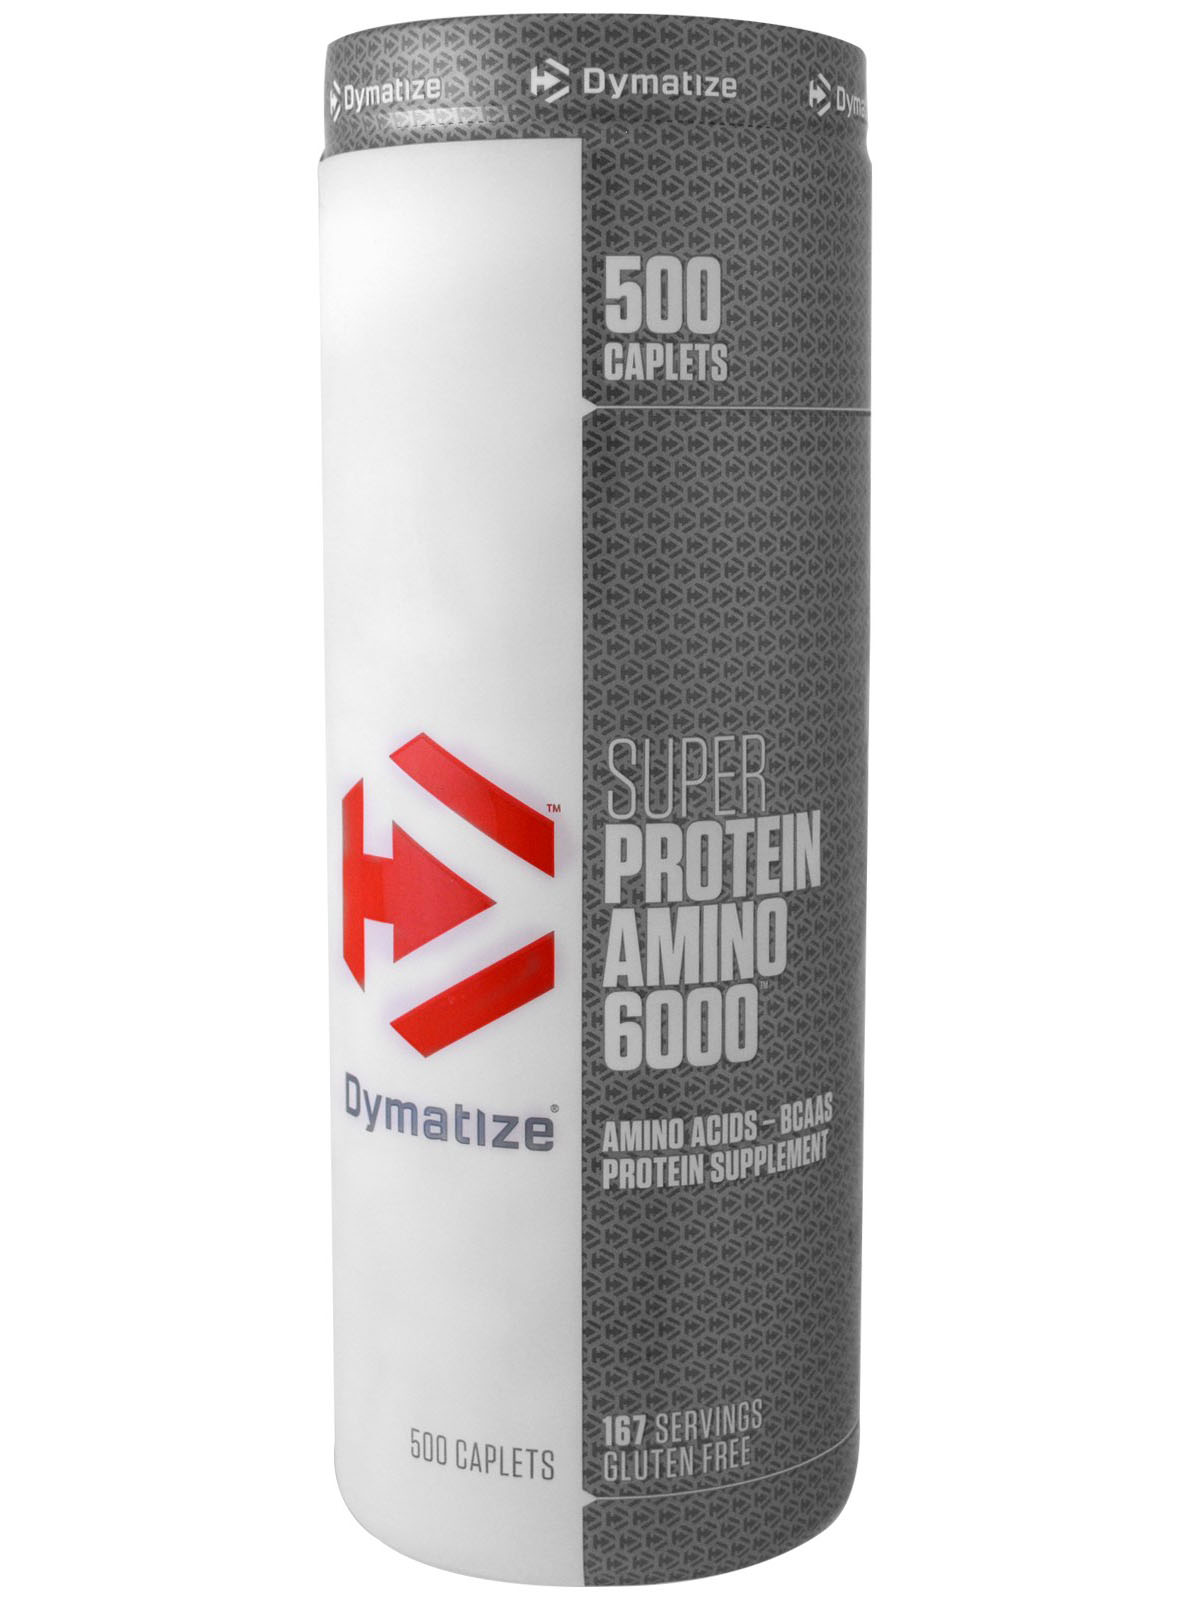 Dymatize Super Protein Amino 6000 (501 табл)